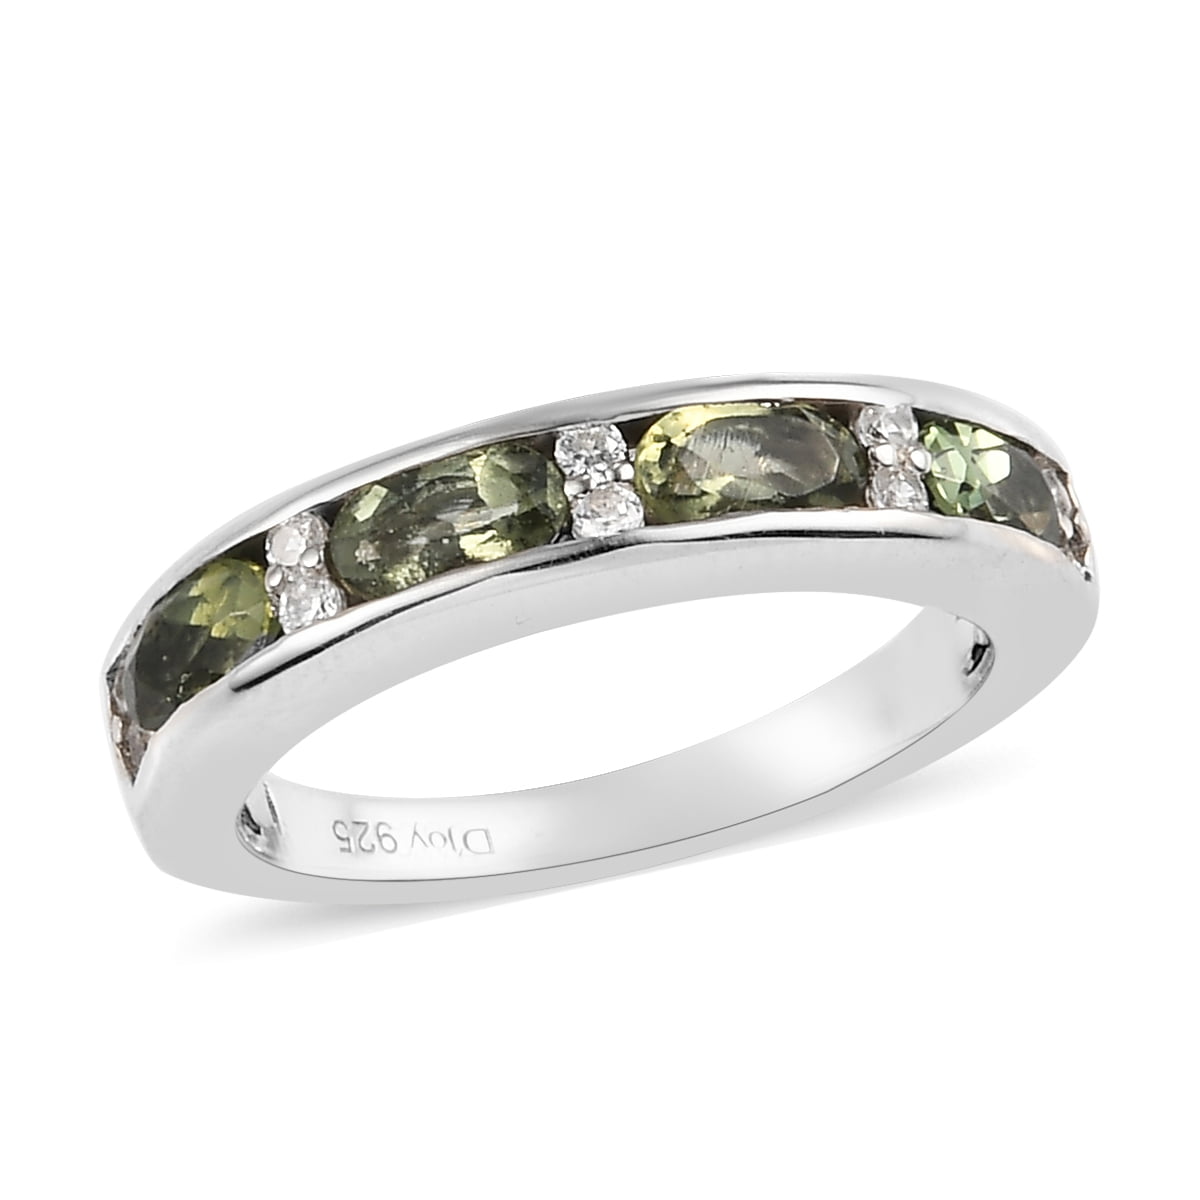 minimalist jewelry for her everyday jewelry Handmade natural Moldavite jewelry healing gemstone gift for her Tiny Pear Moldavite Ring natural green Moldavite ring 10 